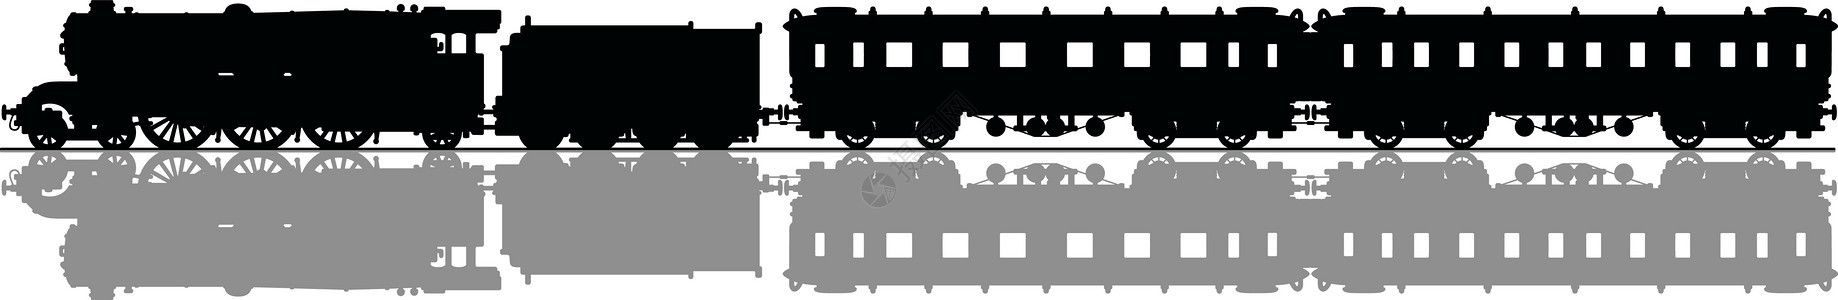 老式客运蒸汽火车引擎教练插图黑色机器卡通片车皮车辆乘客阴影图片